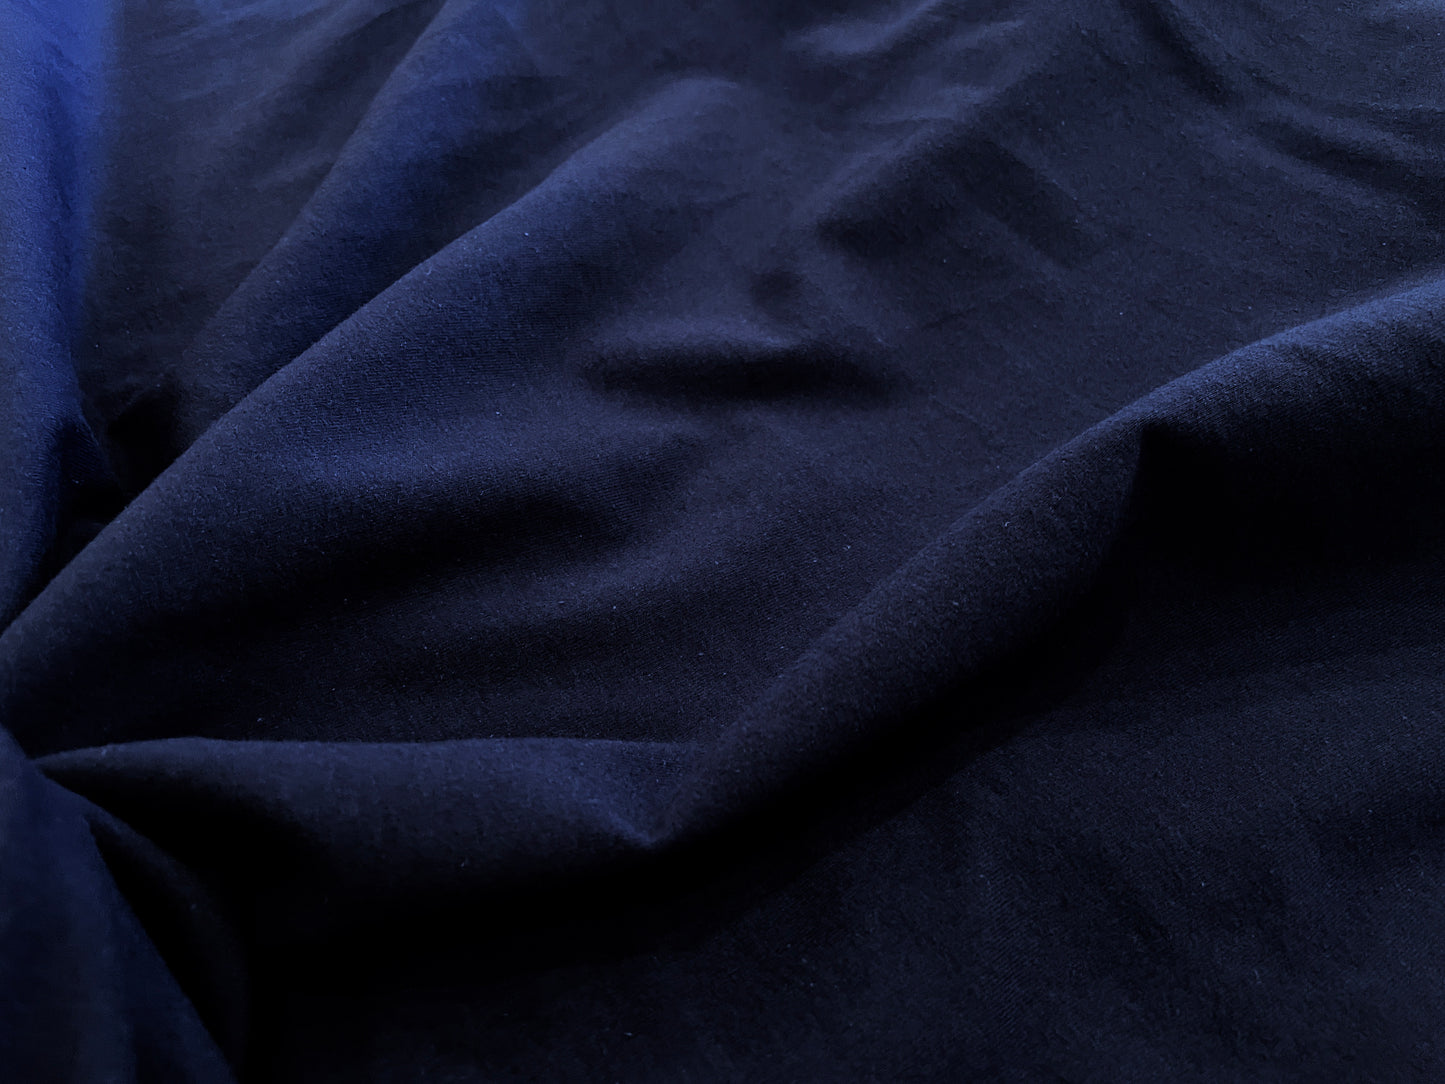 Cotton/Lycra Jersey Knit - 97/3% - True Blue Navy - 5oz